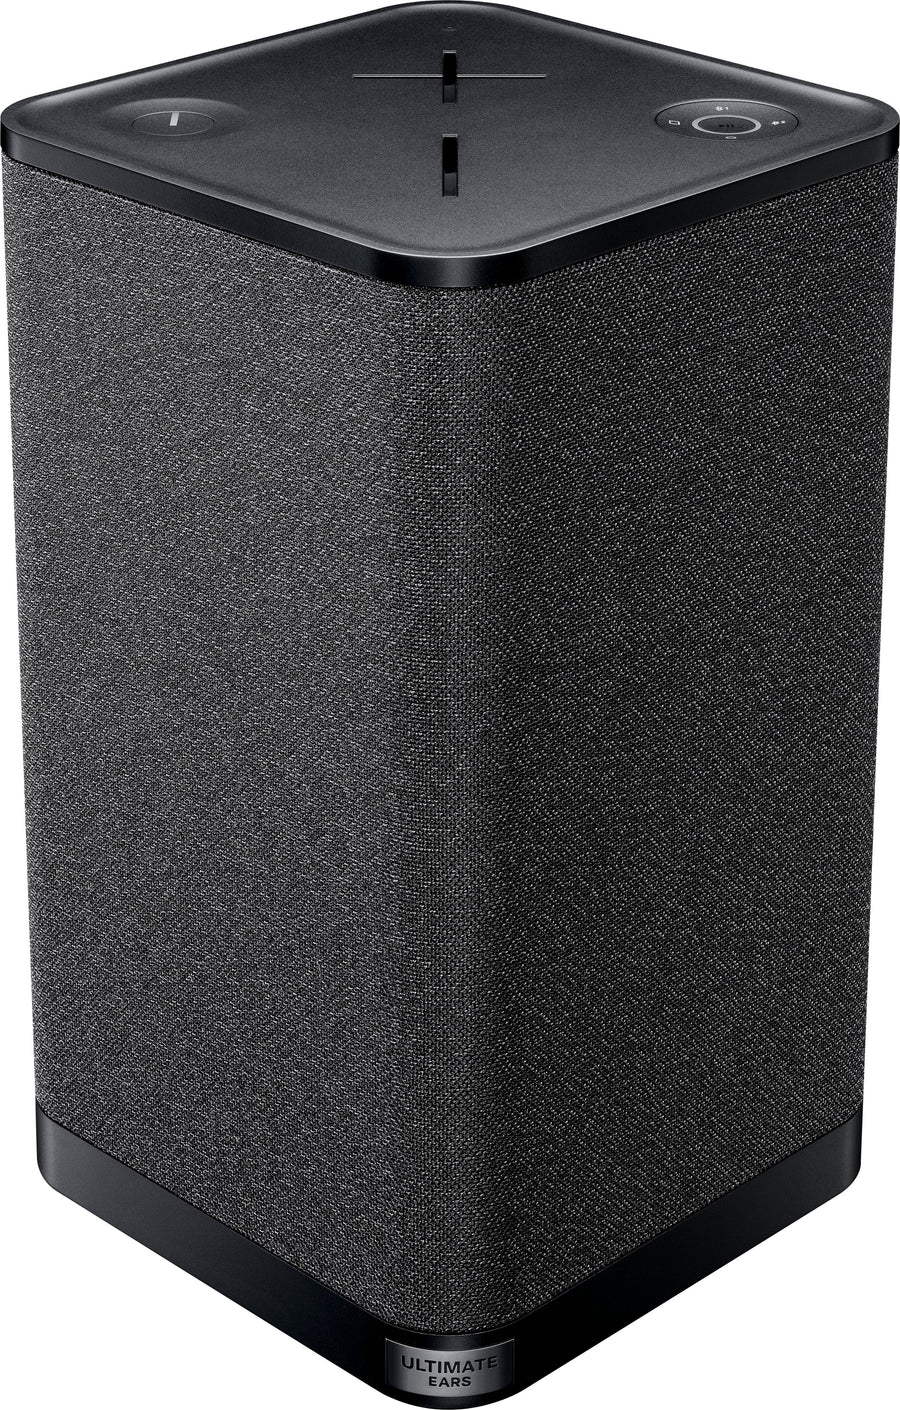 Ultimate Ears - HYPERBOOM Portable Bluetooth Waterproof Speaker with Big Bass - Black_0